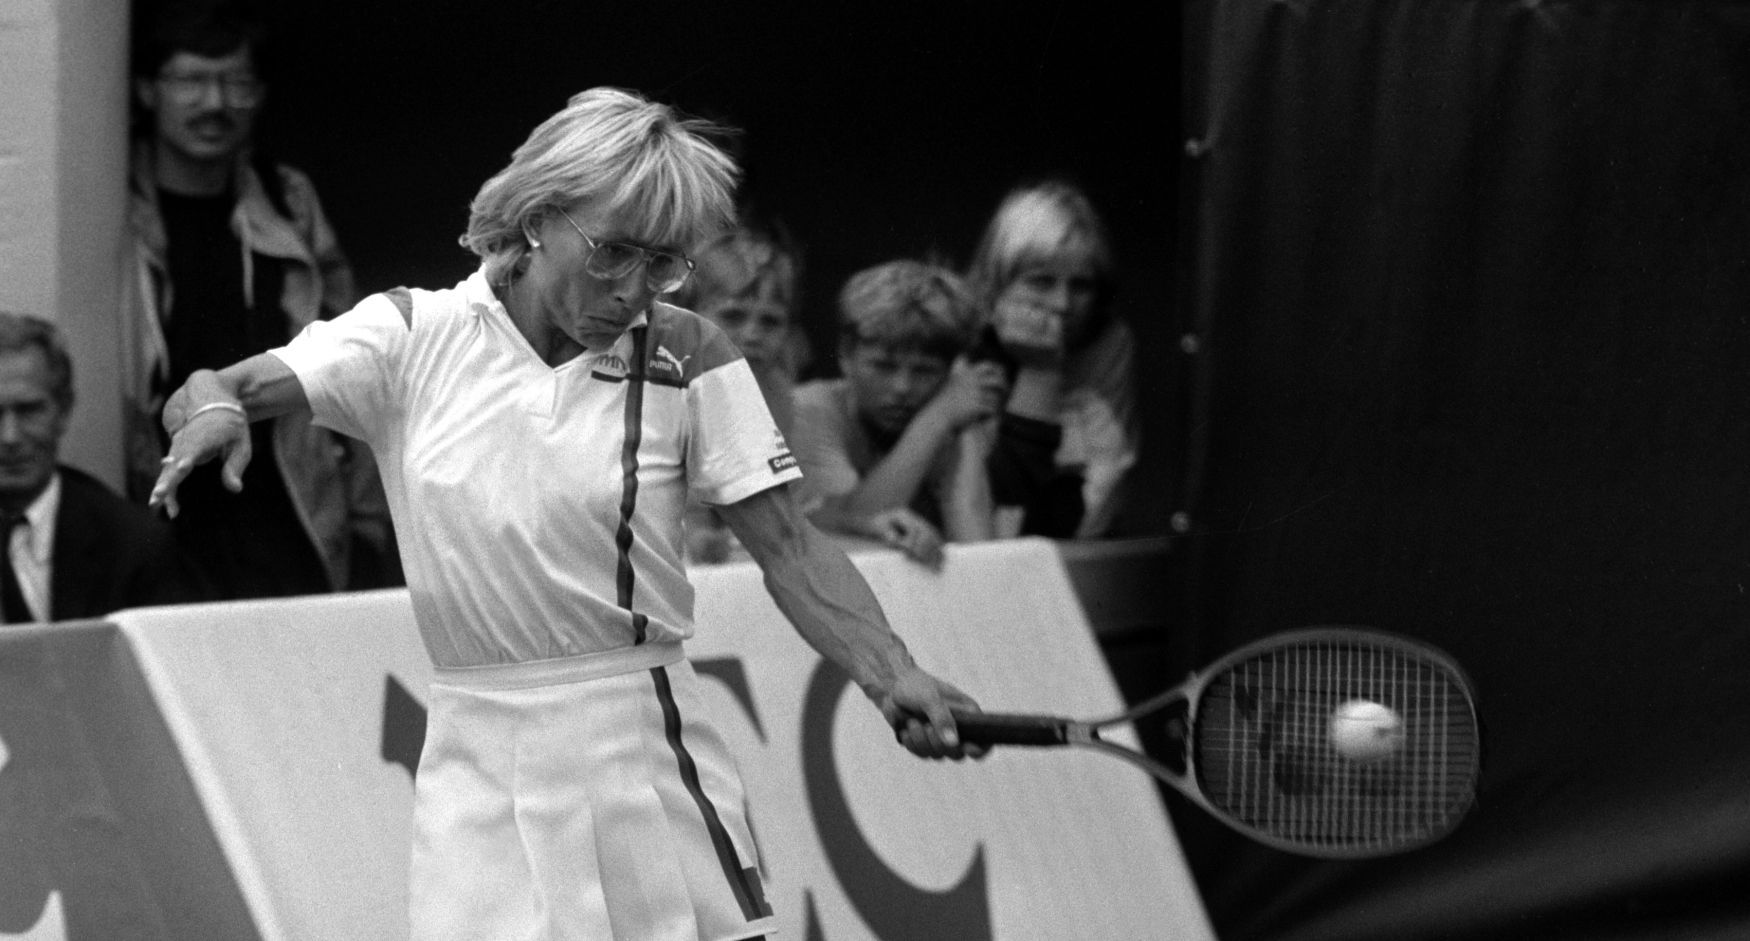 Martina Navrátilová - Fed Cup 1986